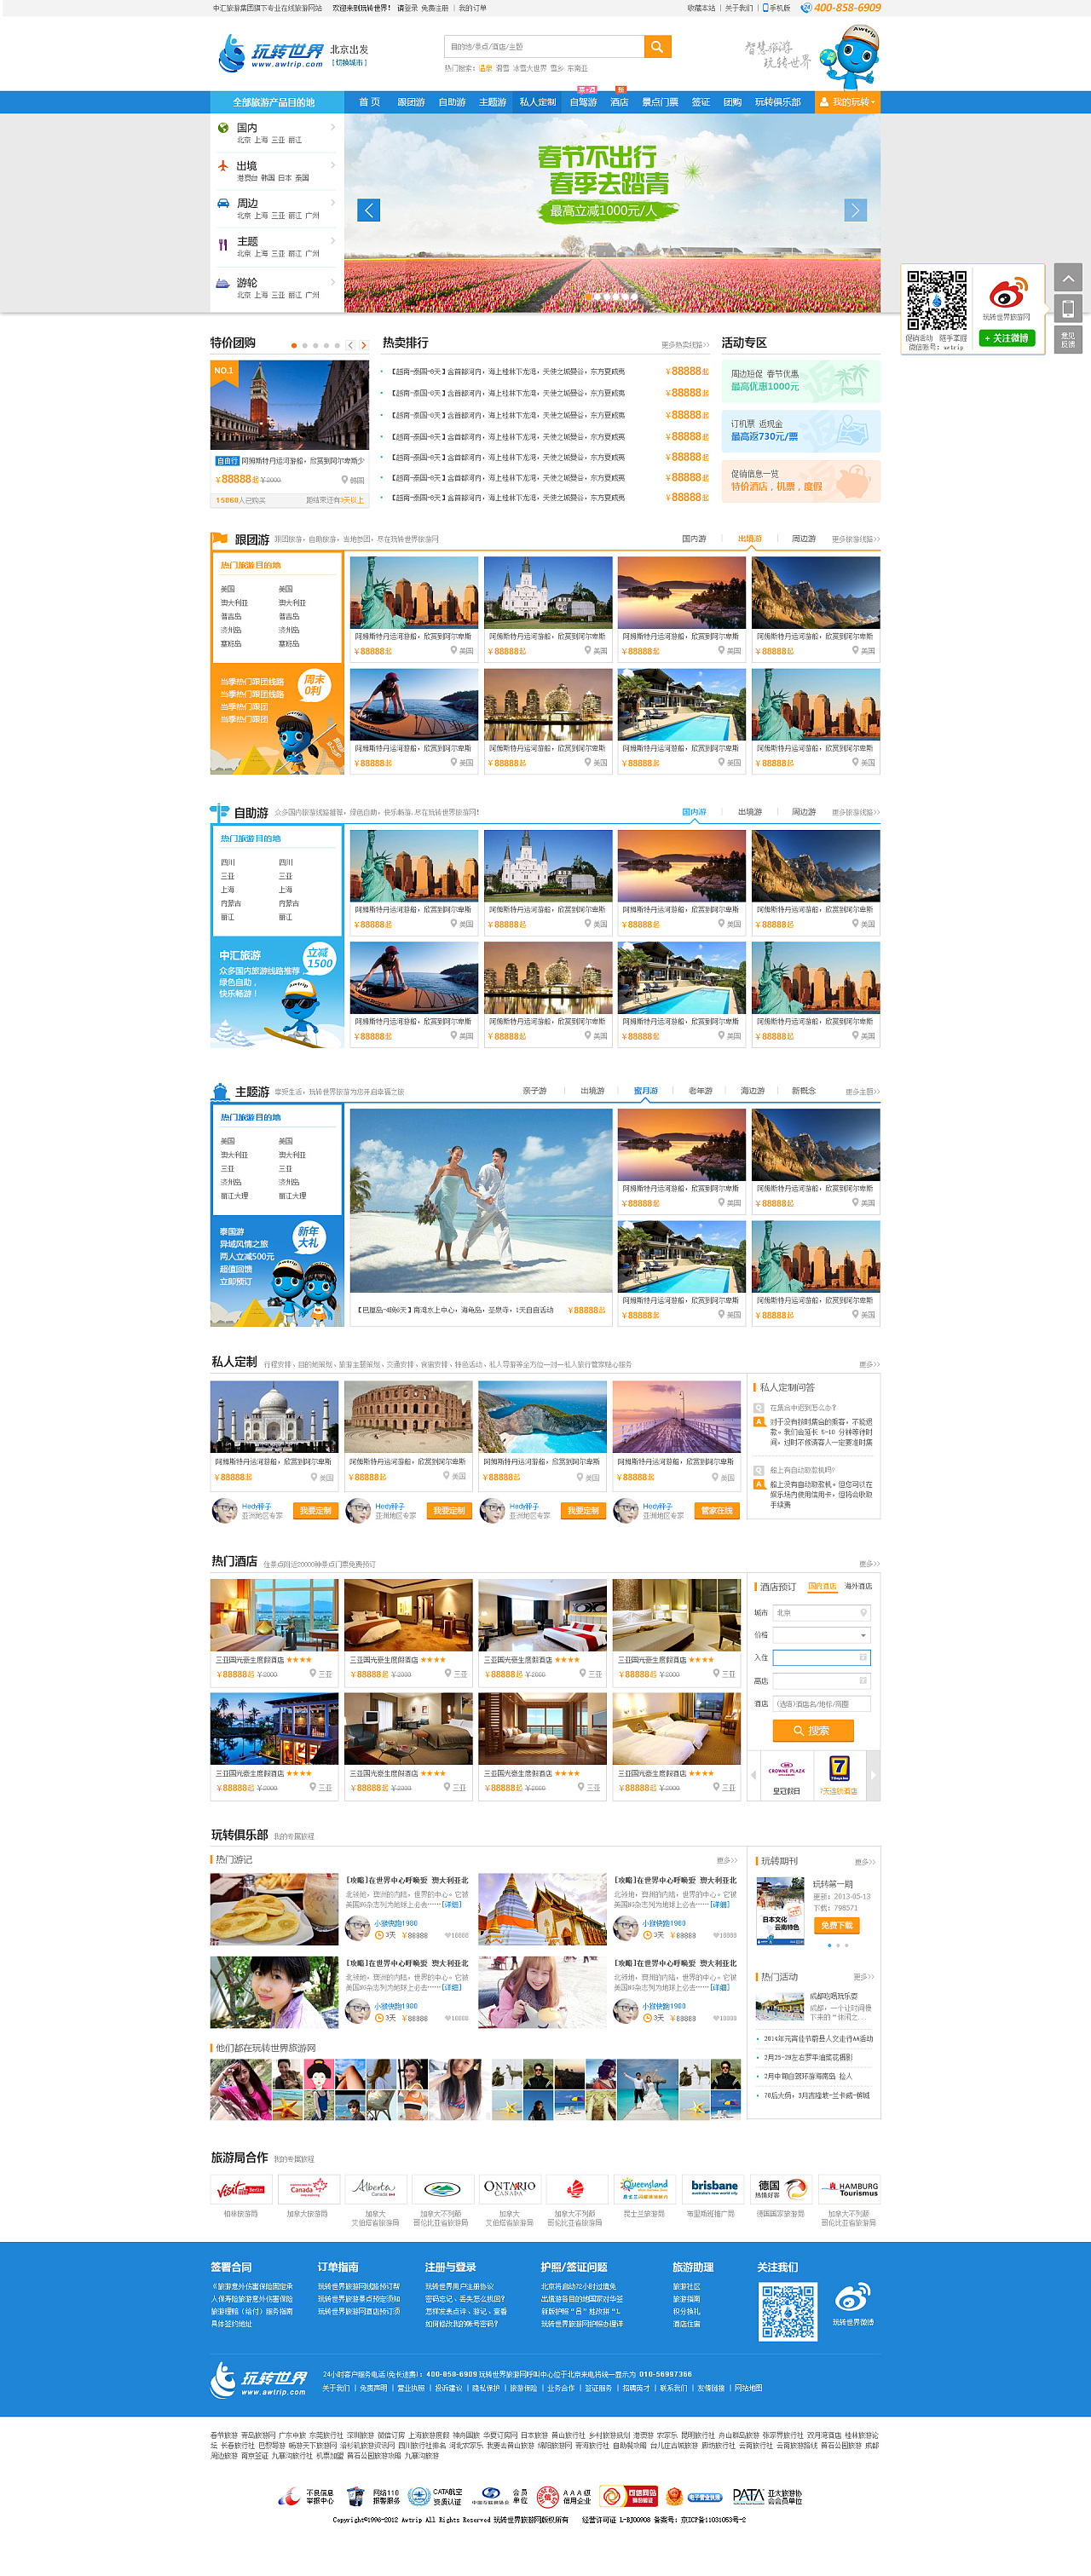 旅游电商网站整站框架产品规划和页面设计